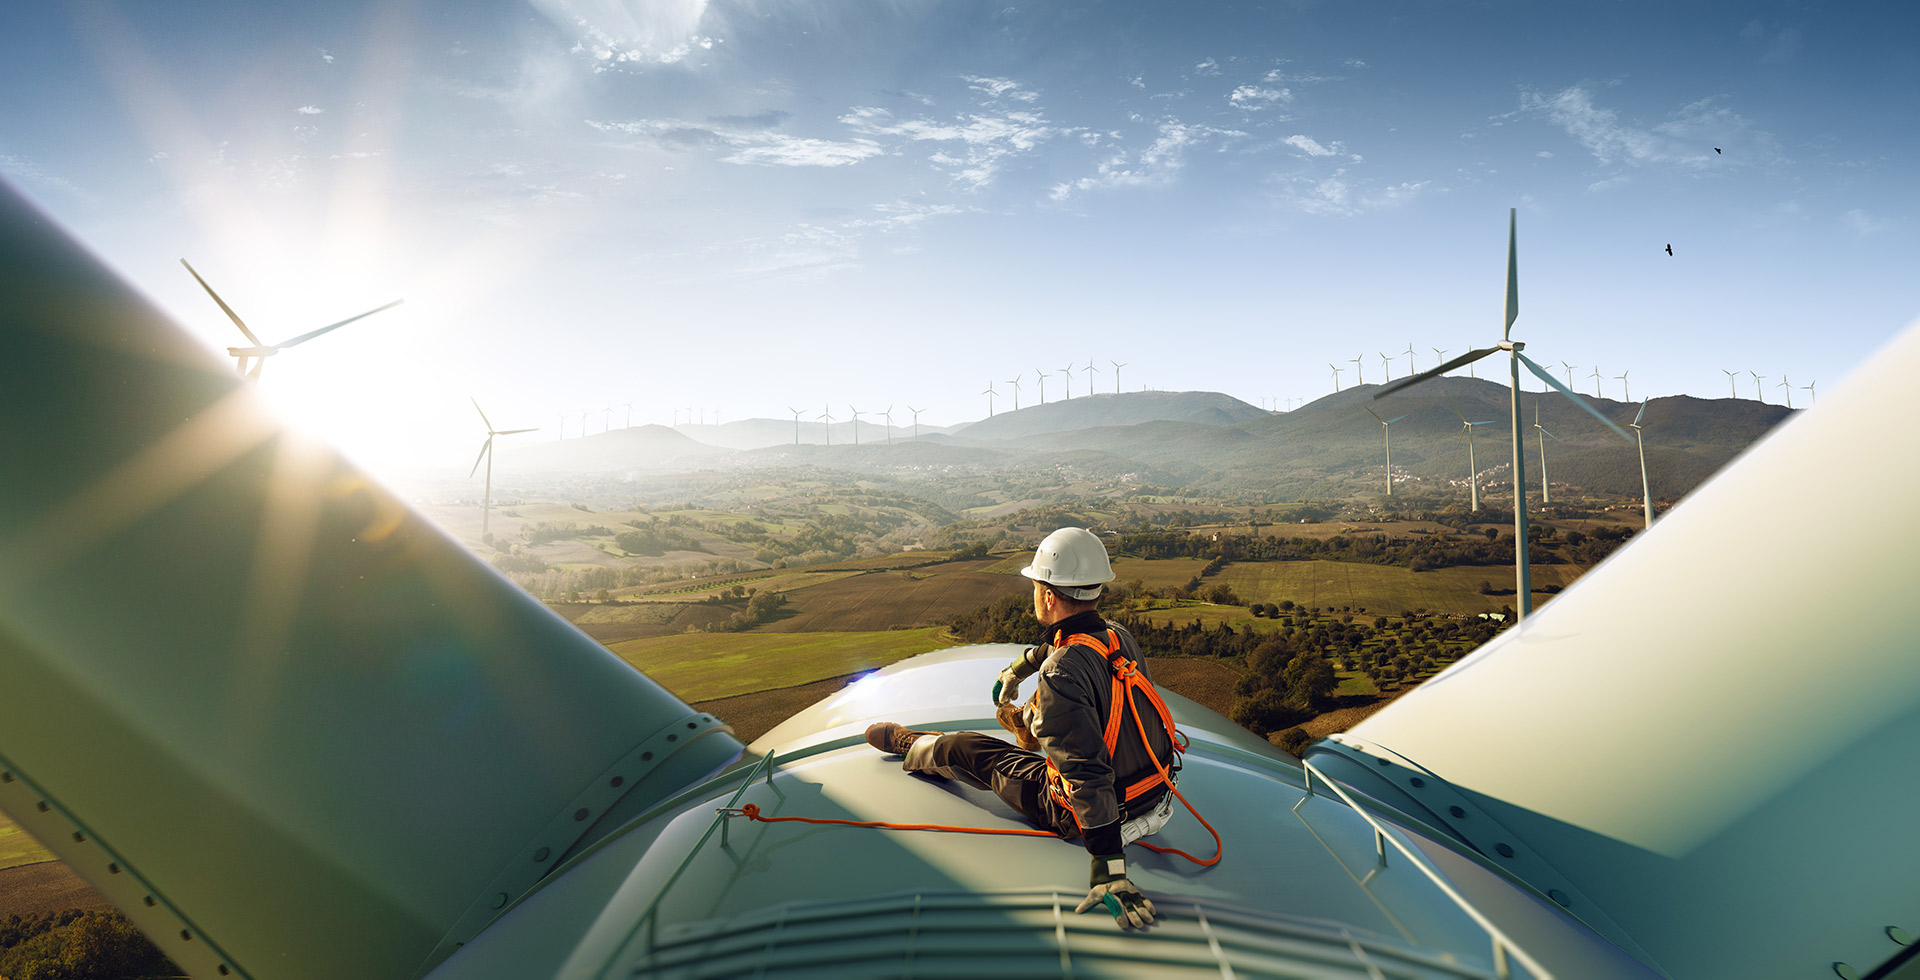 An engineer sits outside on a wind turbine in the sun looking across green fields towards a wind farm